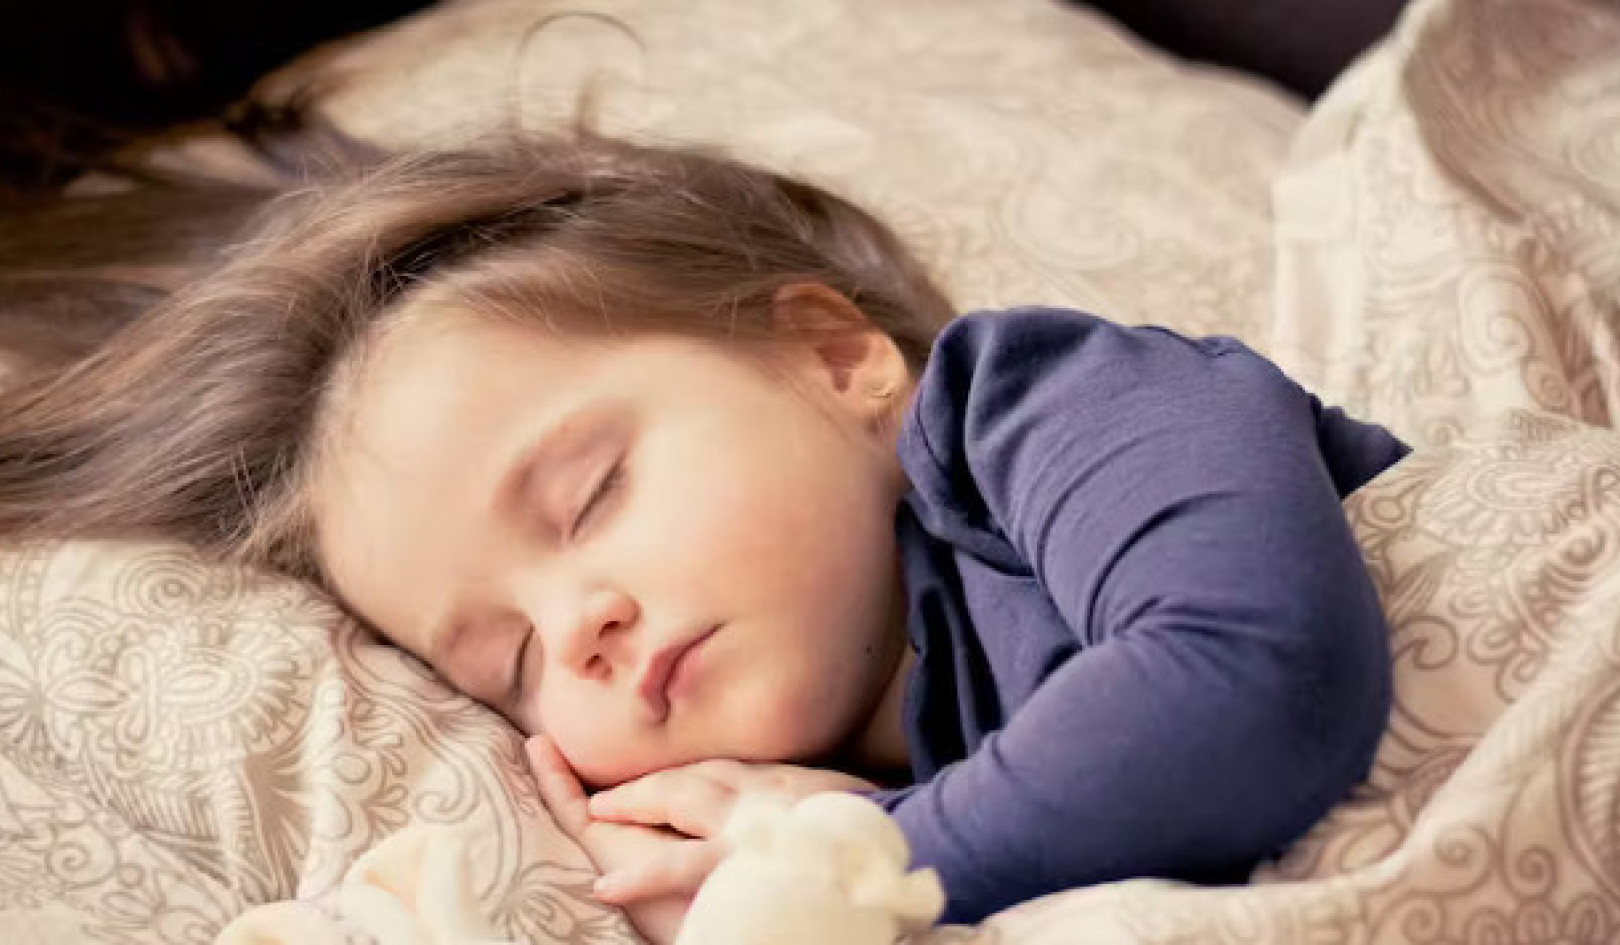 Monet vanhemmat käyttävät melatoniinikumia auttaakseen lapsia nukkumaan